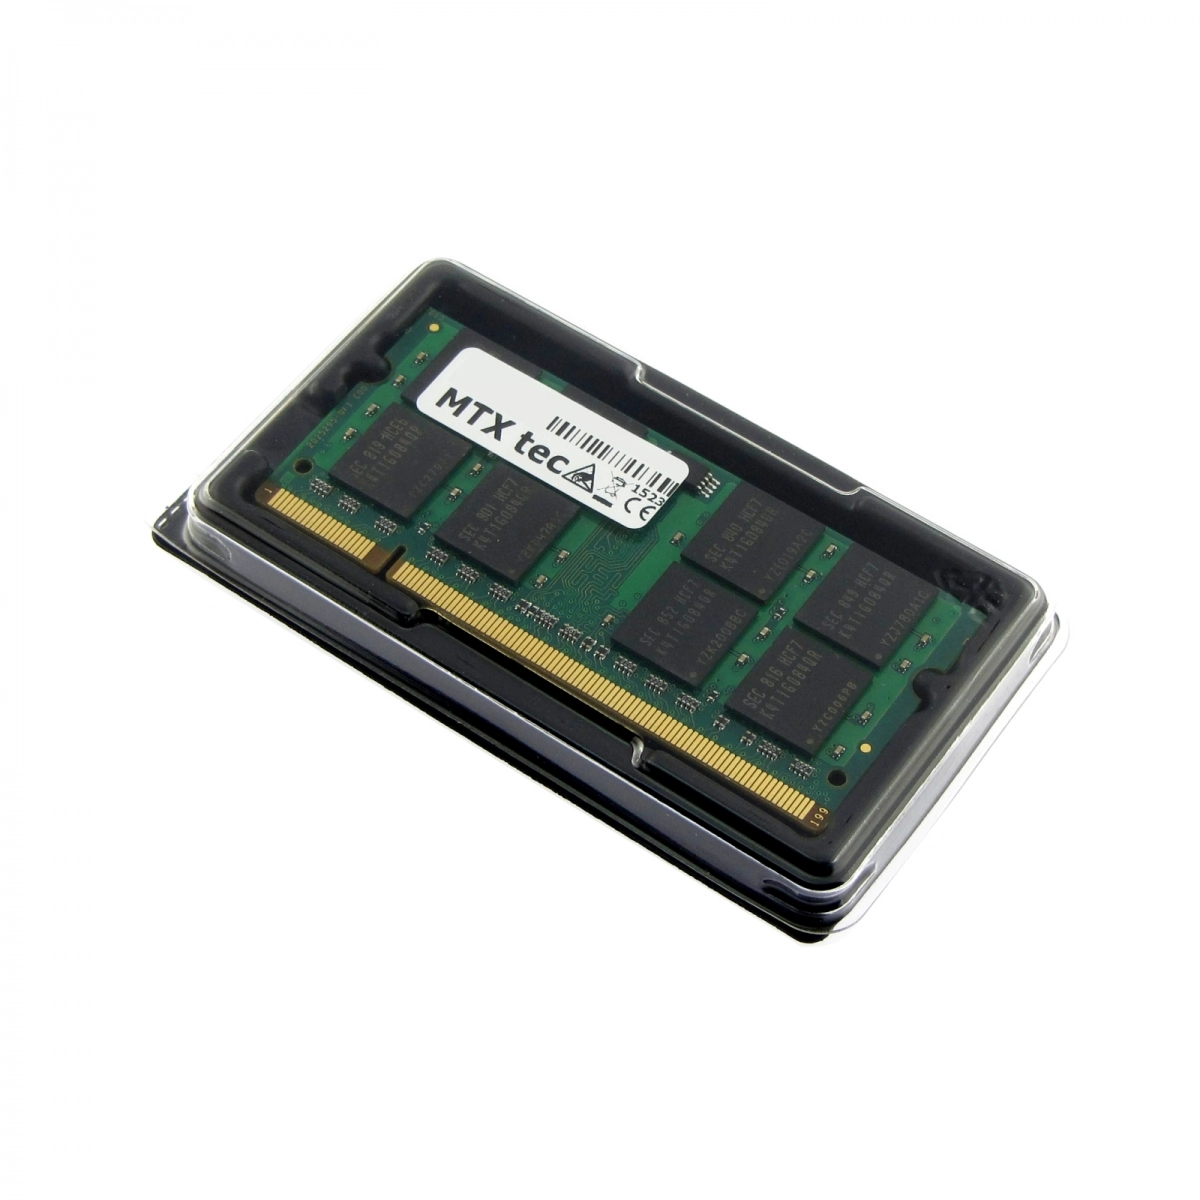 MTXtec Arbeitsspeicher 2 GB RAM für FUJITSU Esprimo Mobile V-5535, V5535